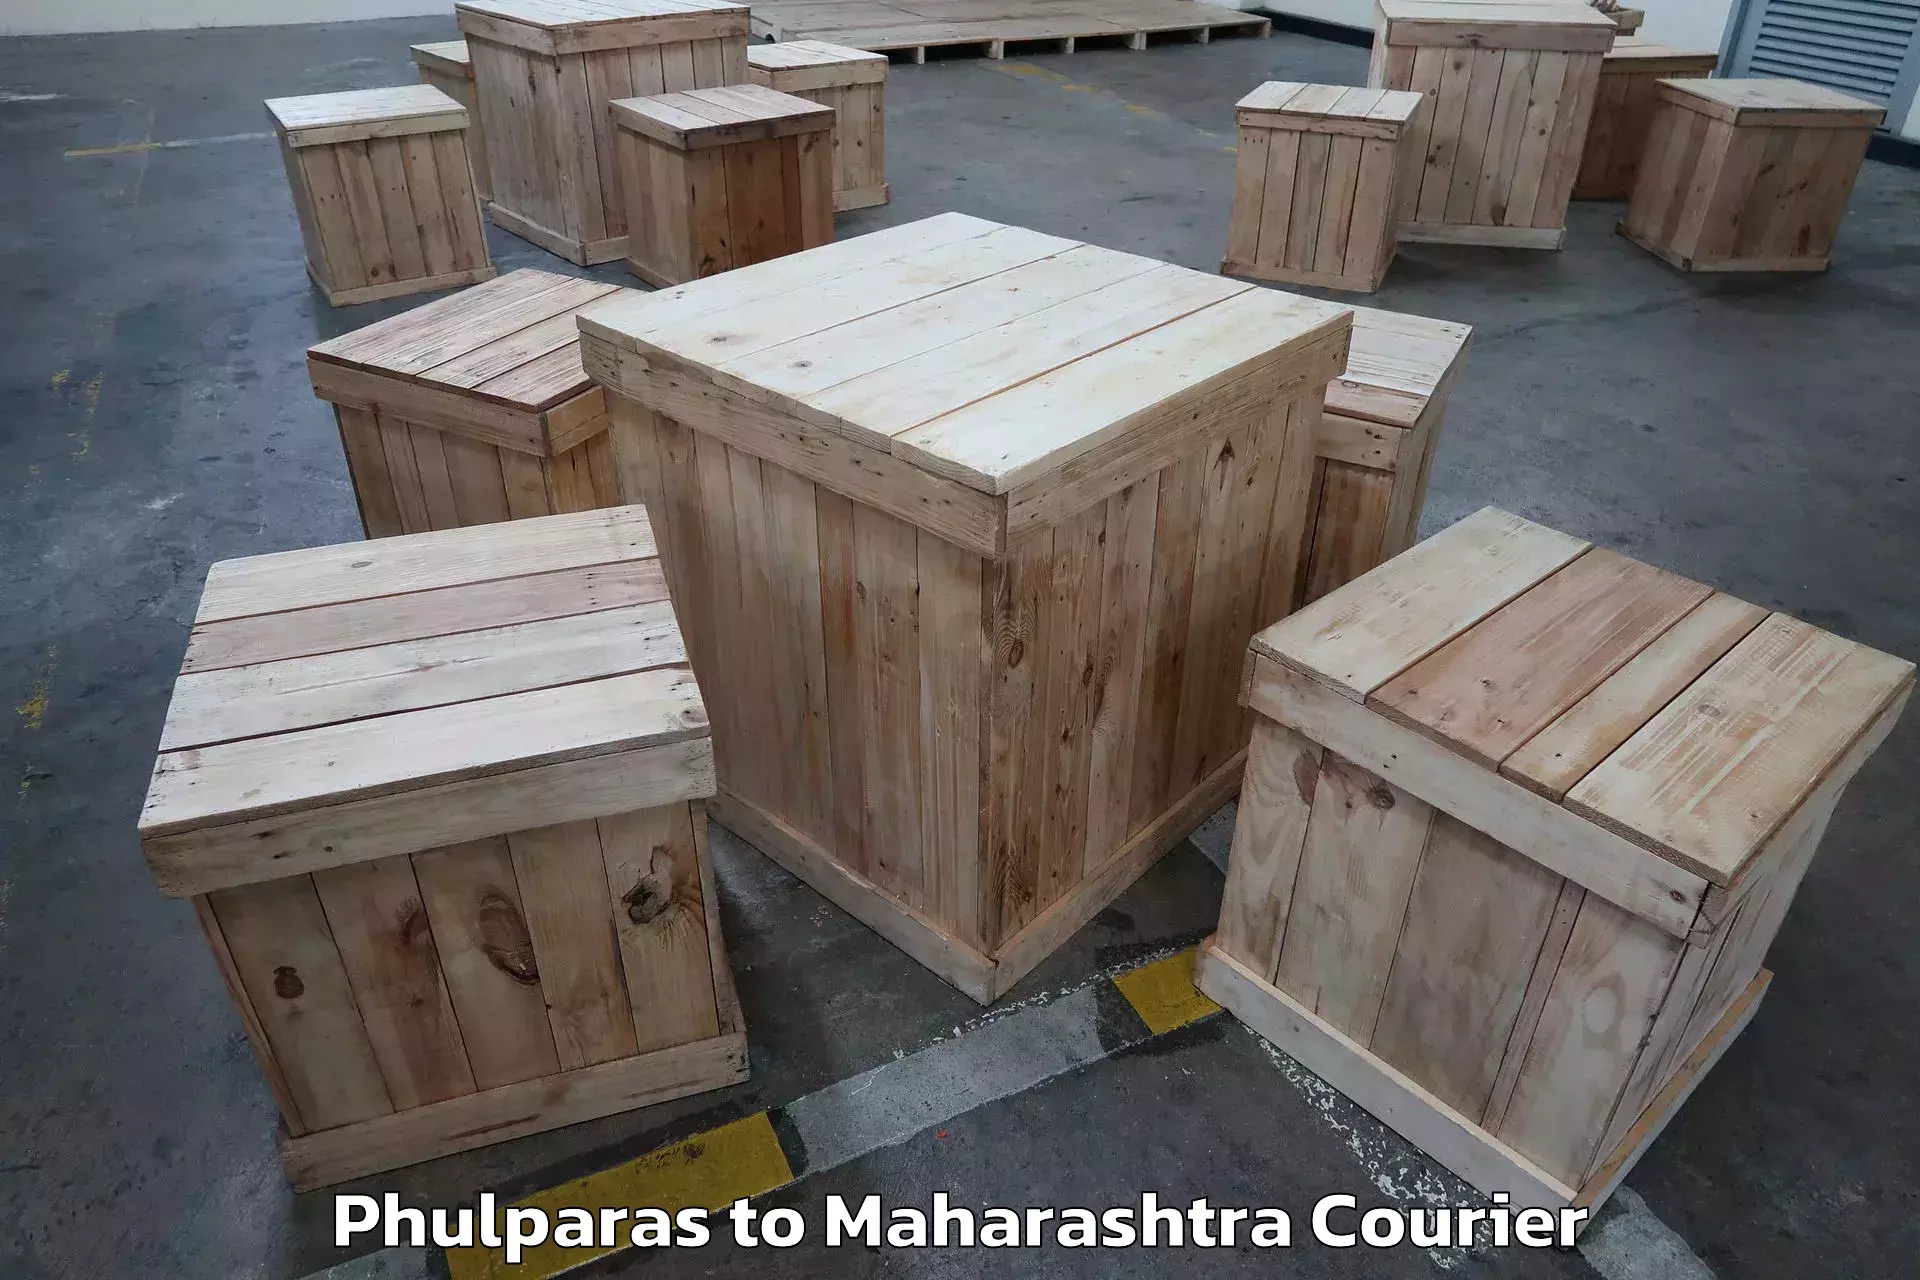 Furniture relocation experts Phulparas to Kalyan